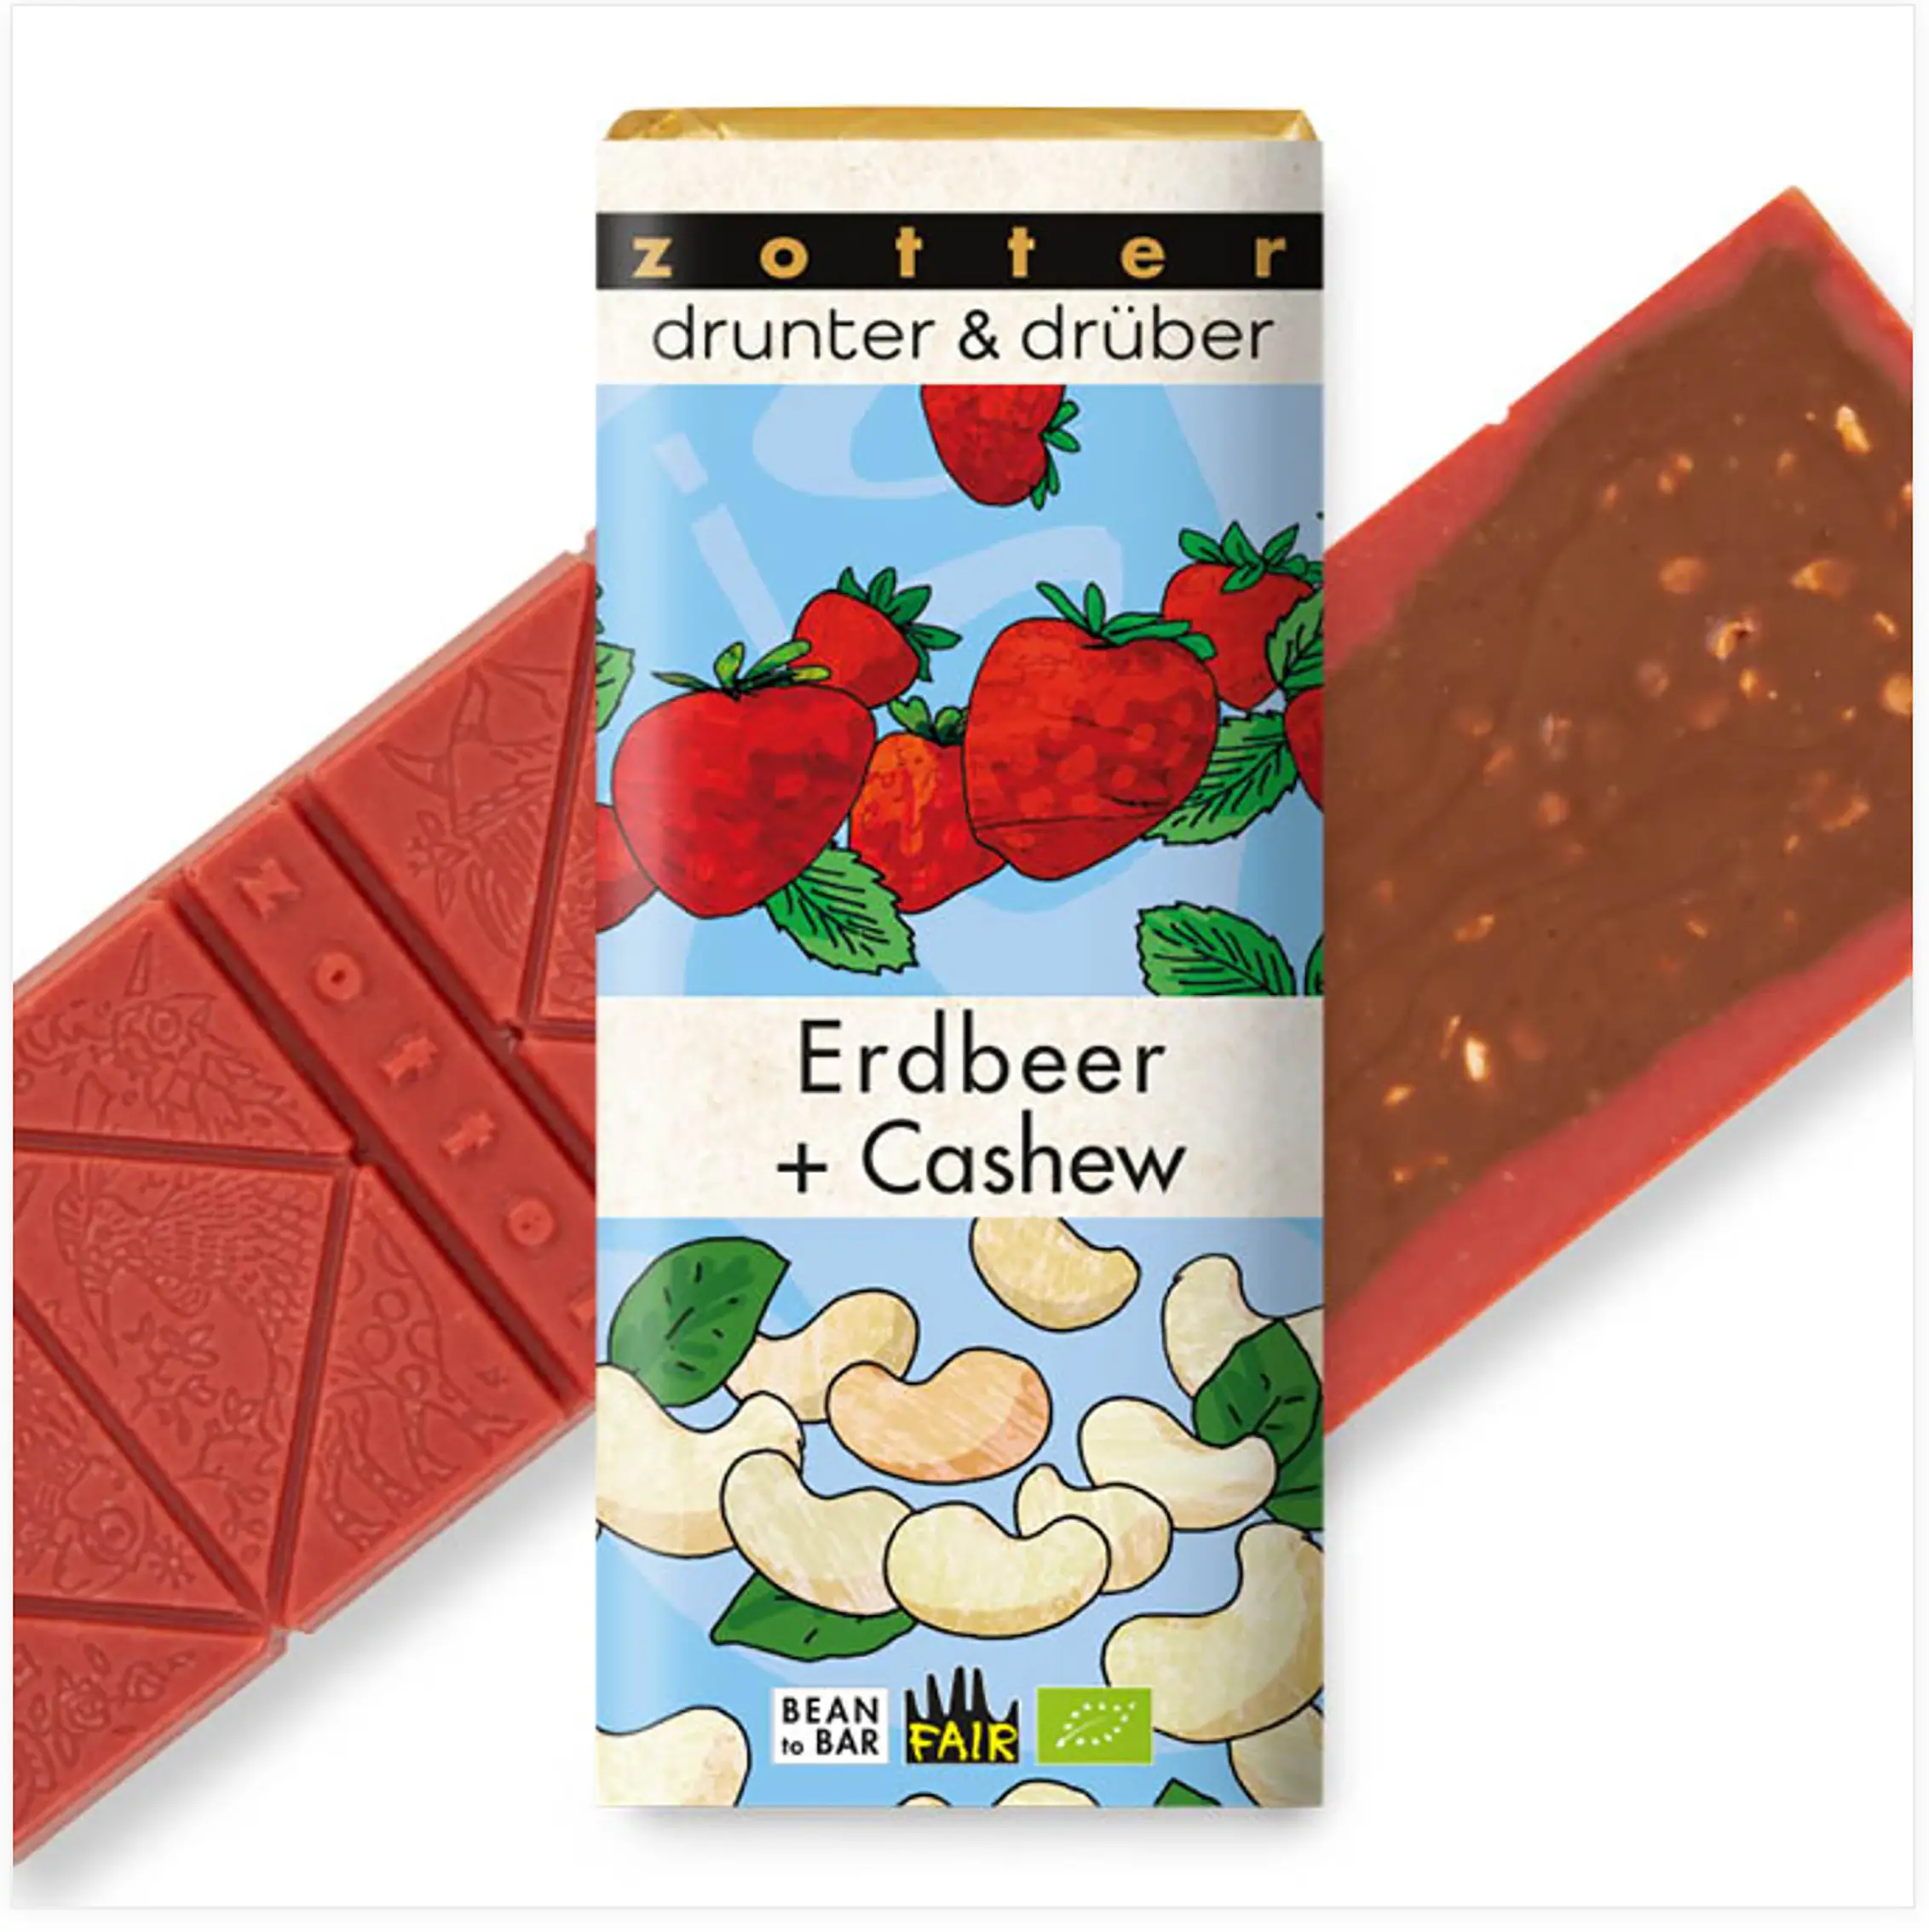 Drunter und drüber schokolade Erdbeer Cashew von Zotter